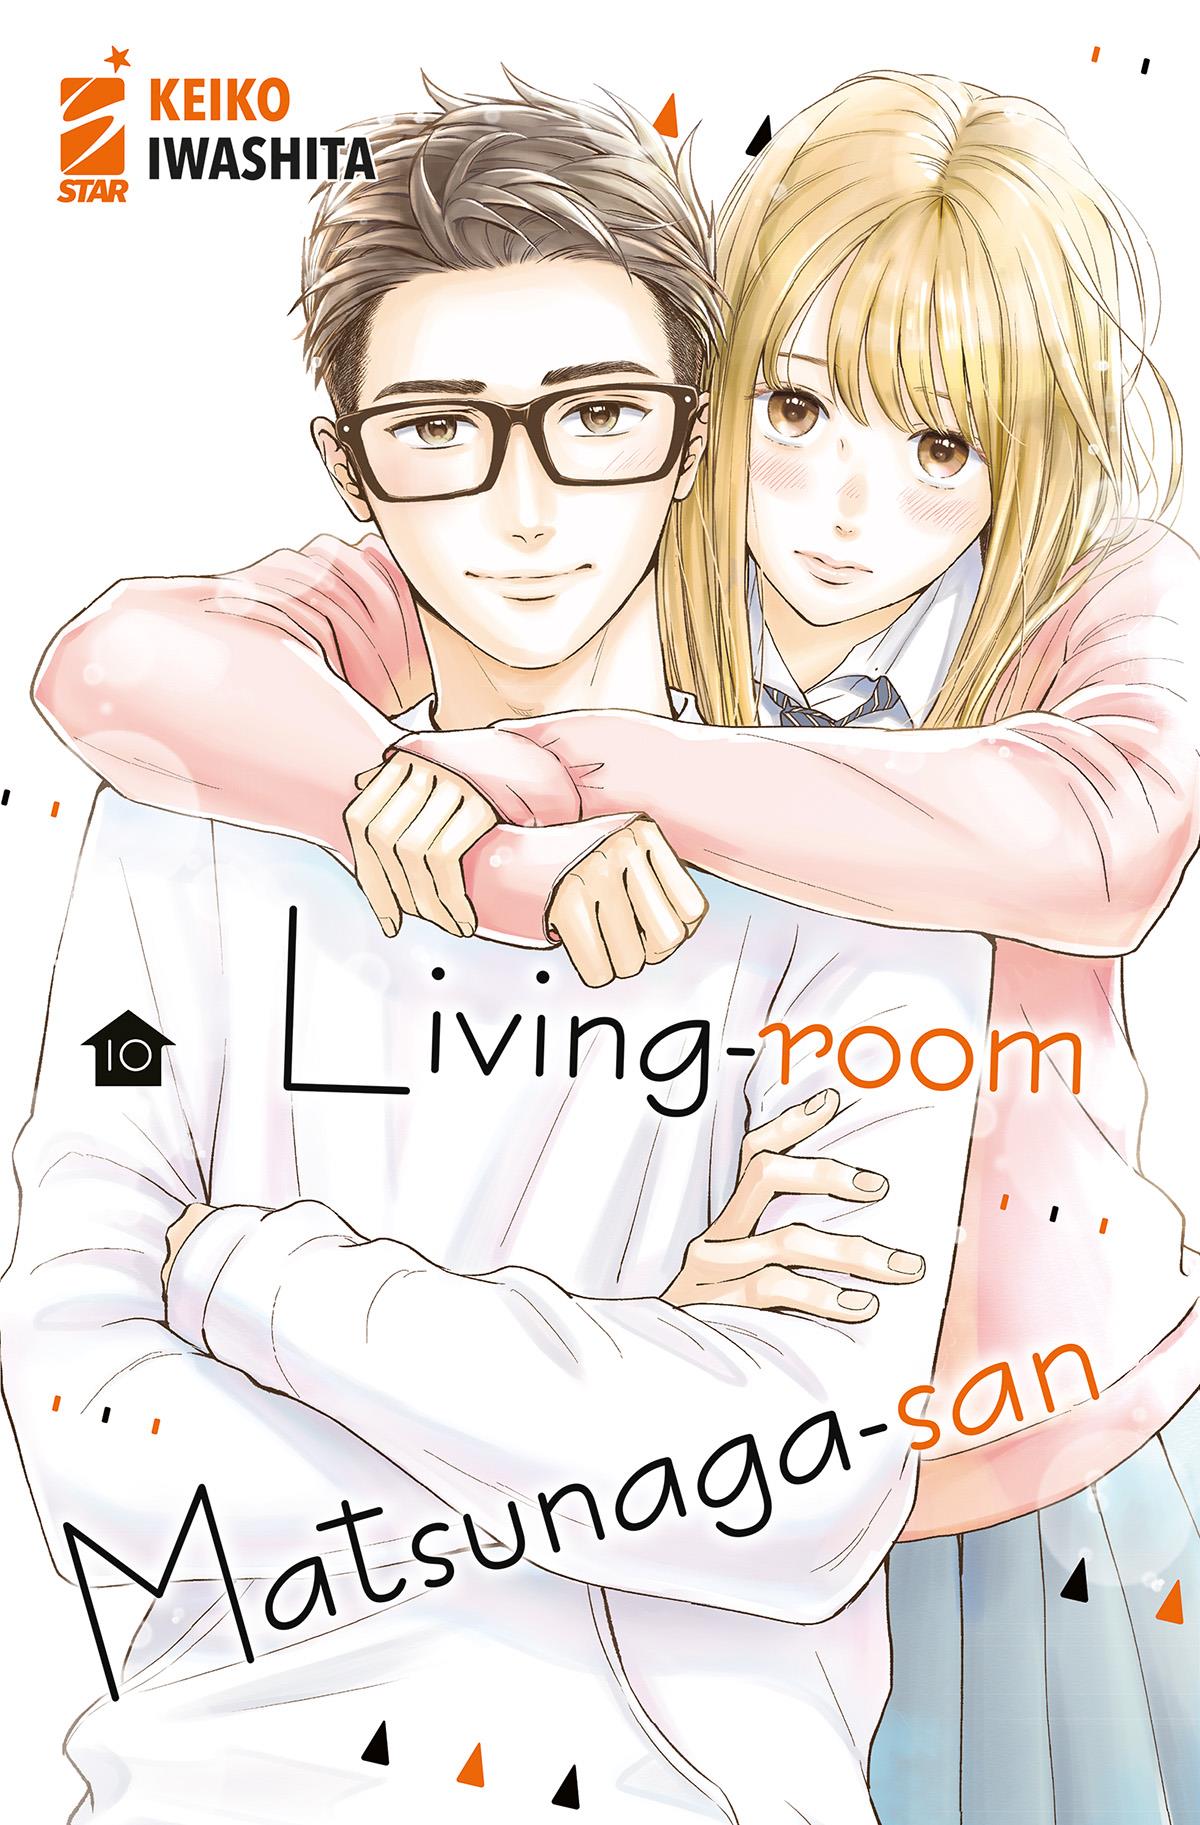 AMICI #294 LIVING ROOM MATSUNAGA-SAN N.10